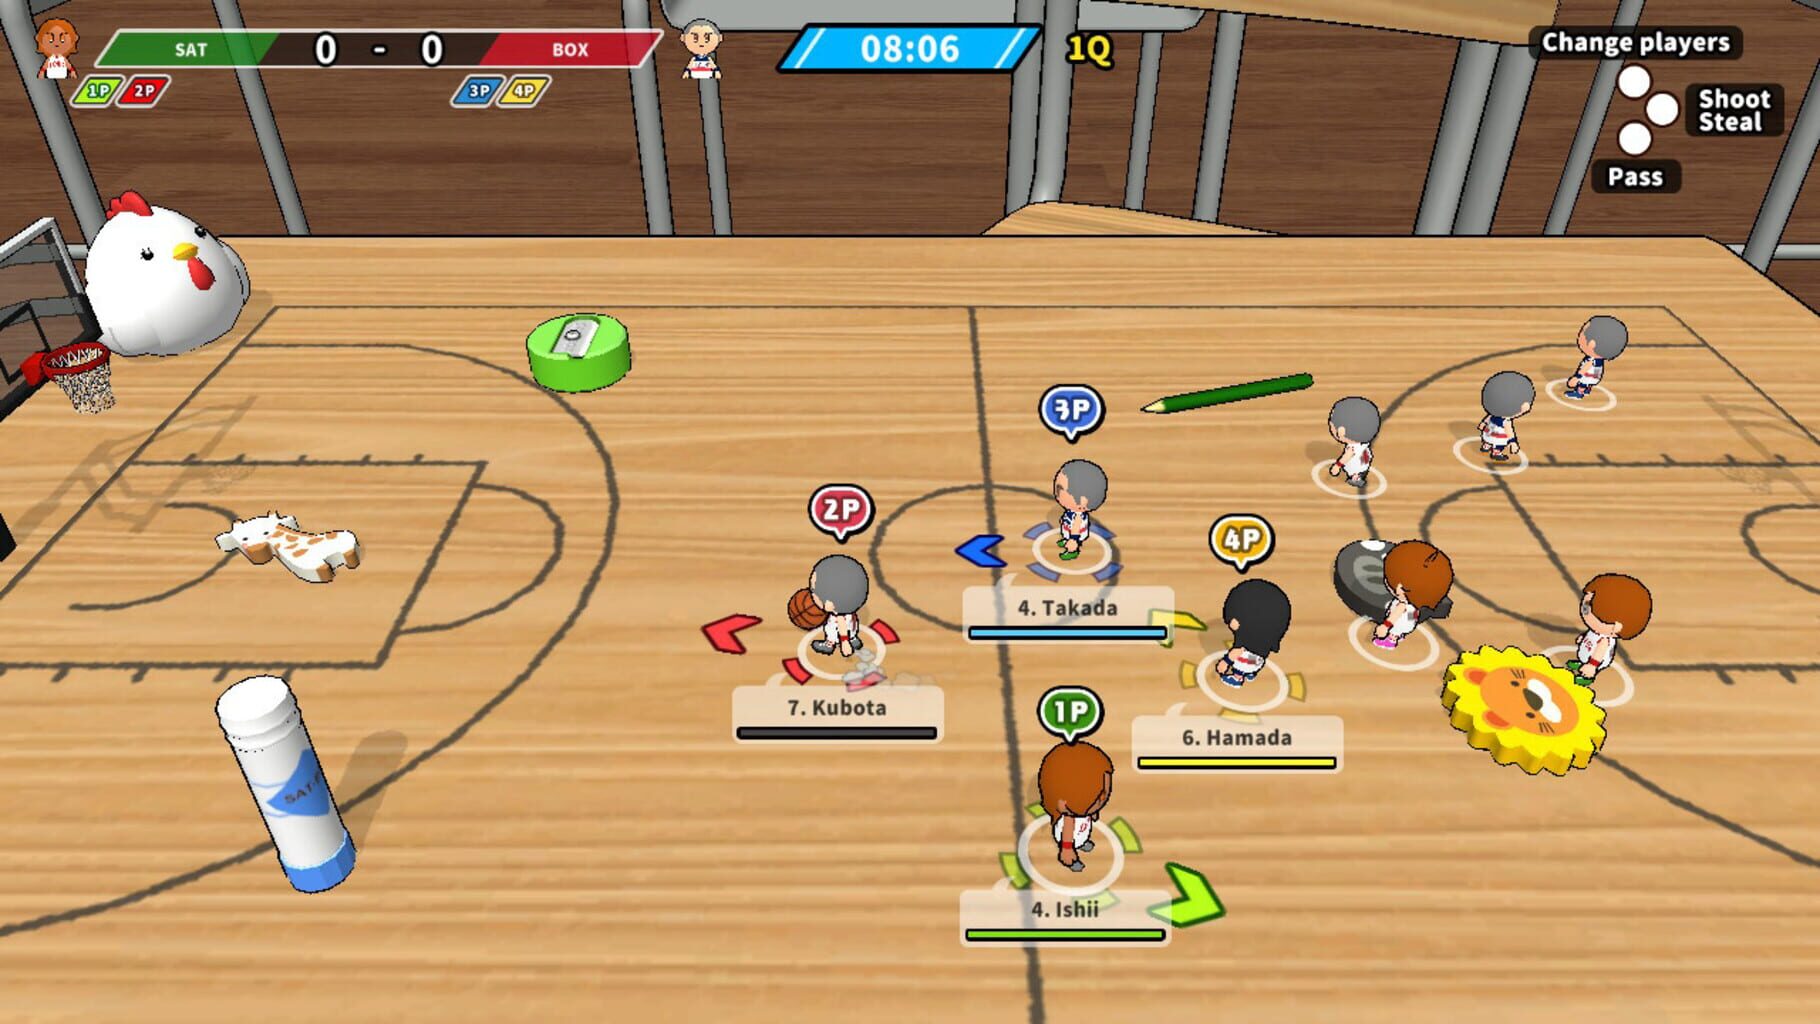 Desktop Basketball 2 screenshot